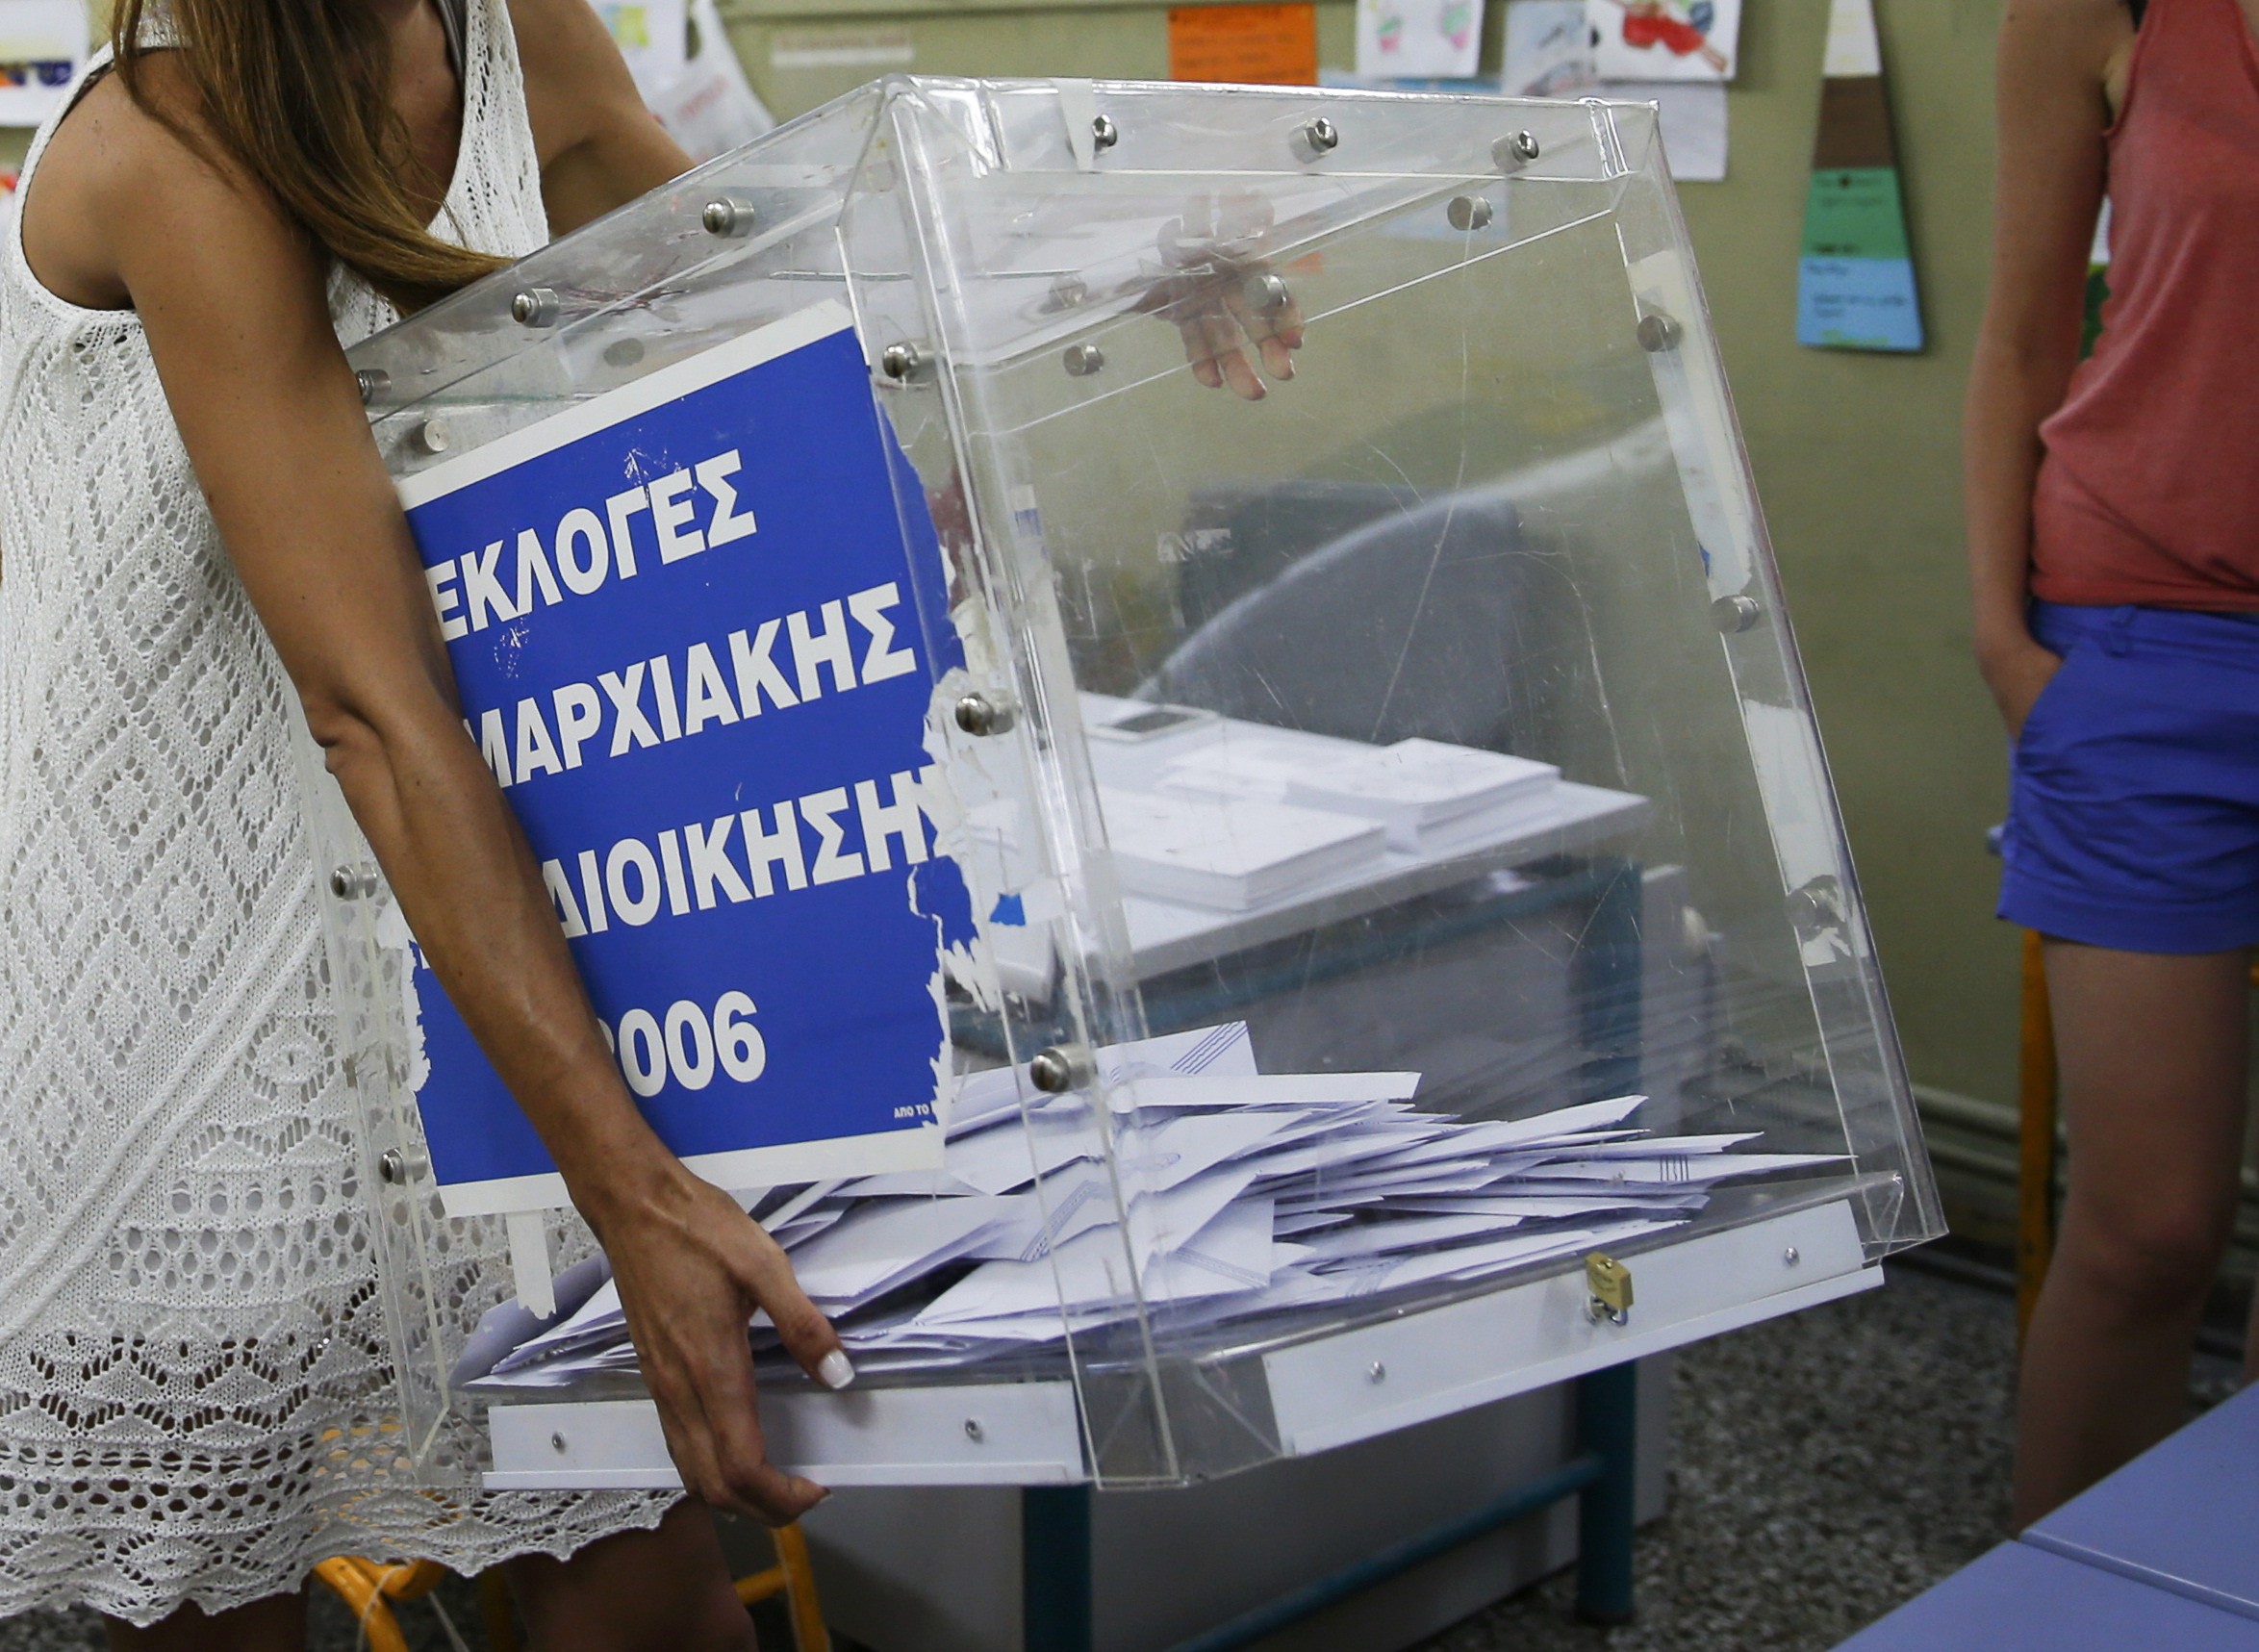 El “No” gana en el referéndum de Grecia con el 61,3 % de los votos